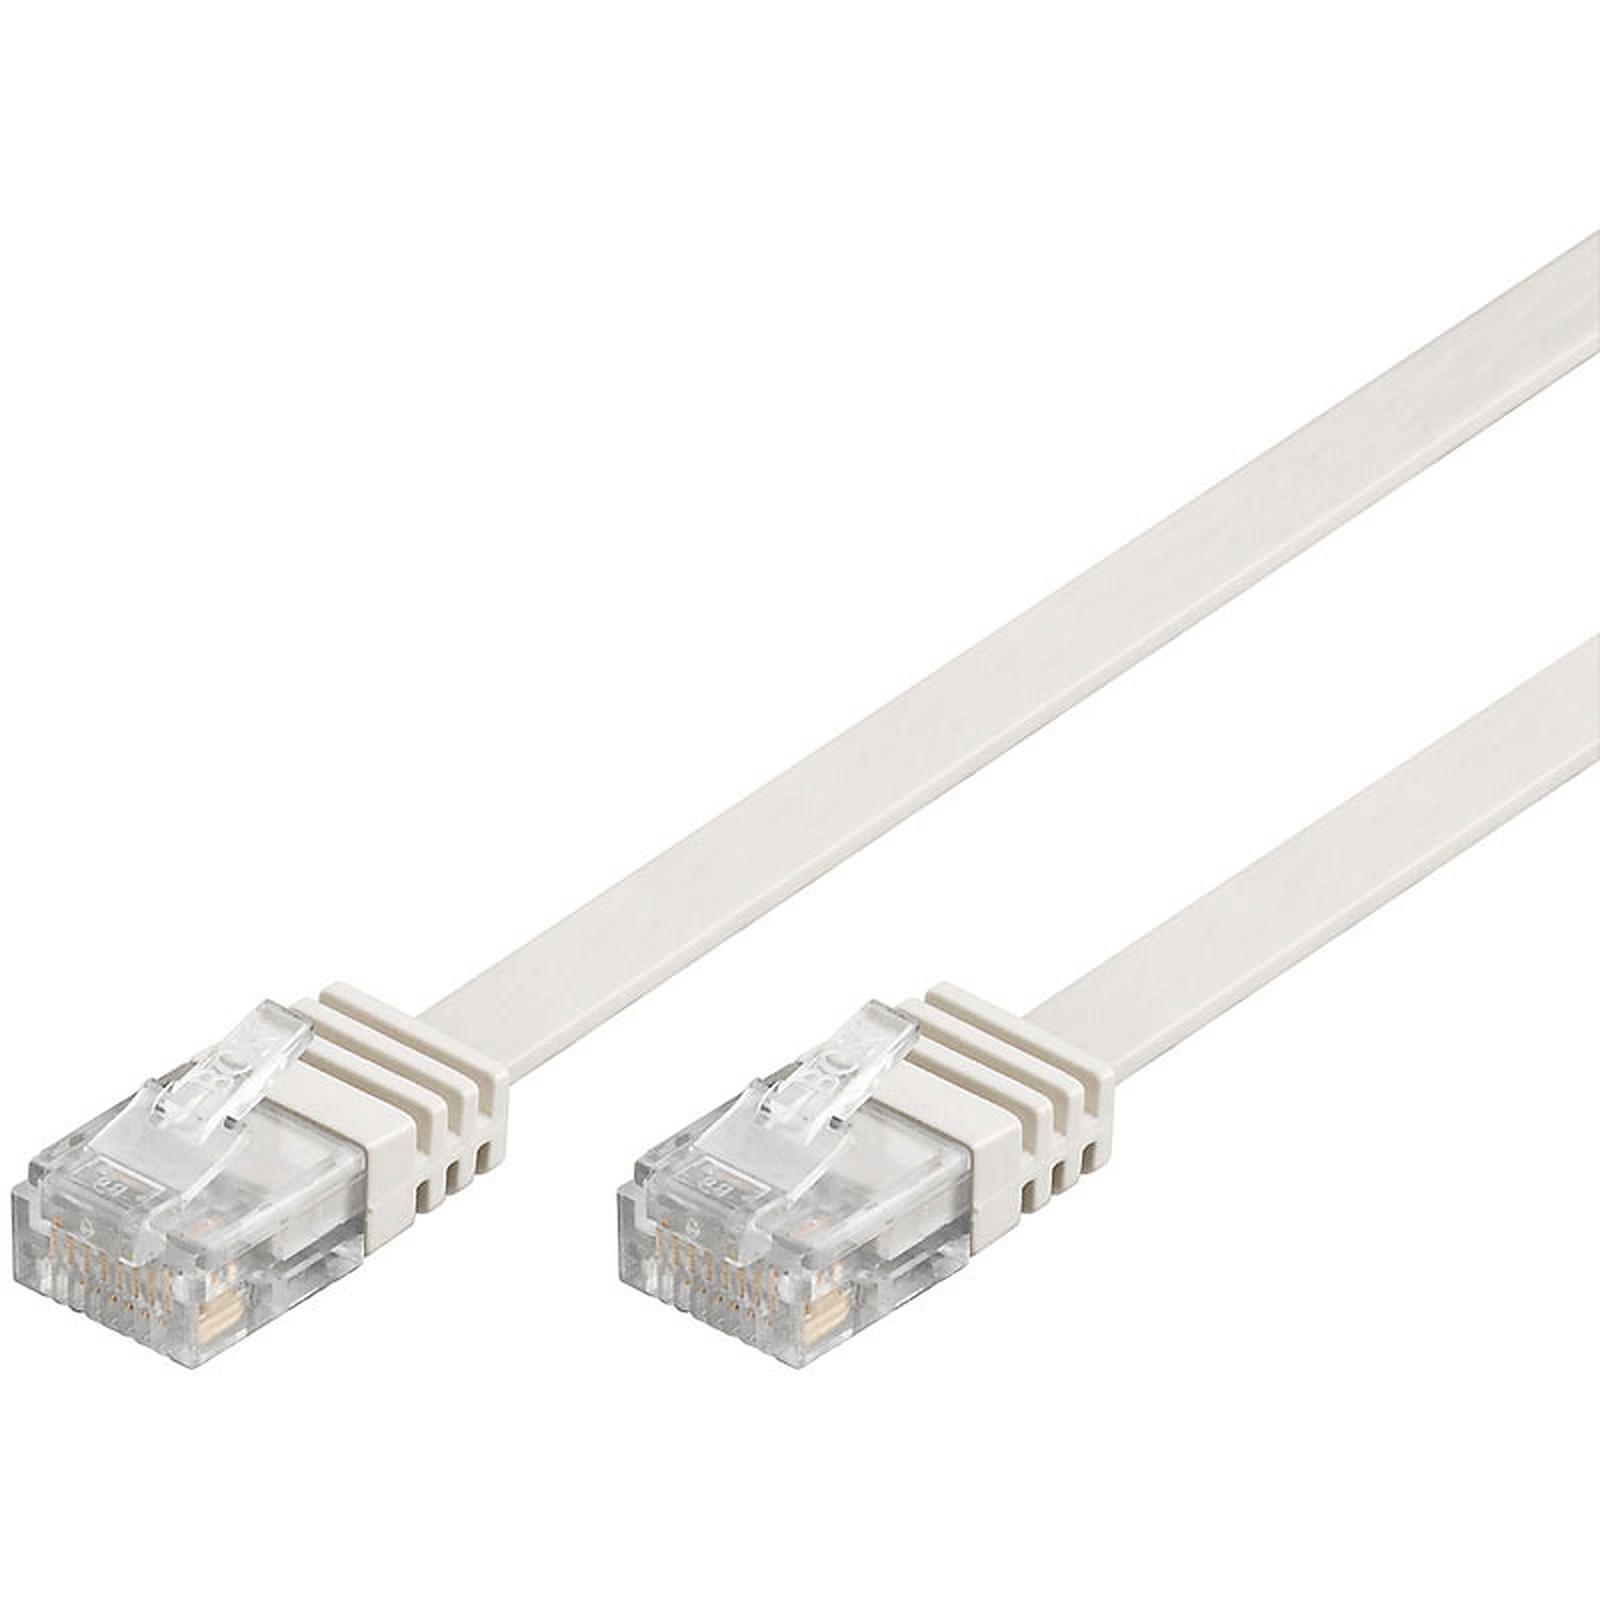 Cable RJ45 plat categorie 6 U/UTP 5 m (Blanc) - Cable RJ45 Generique